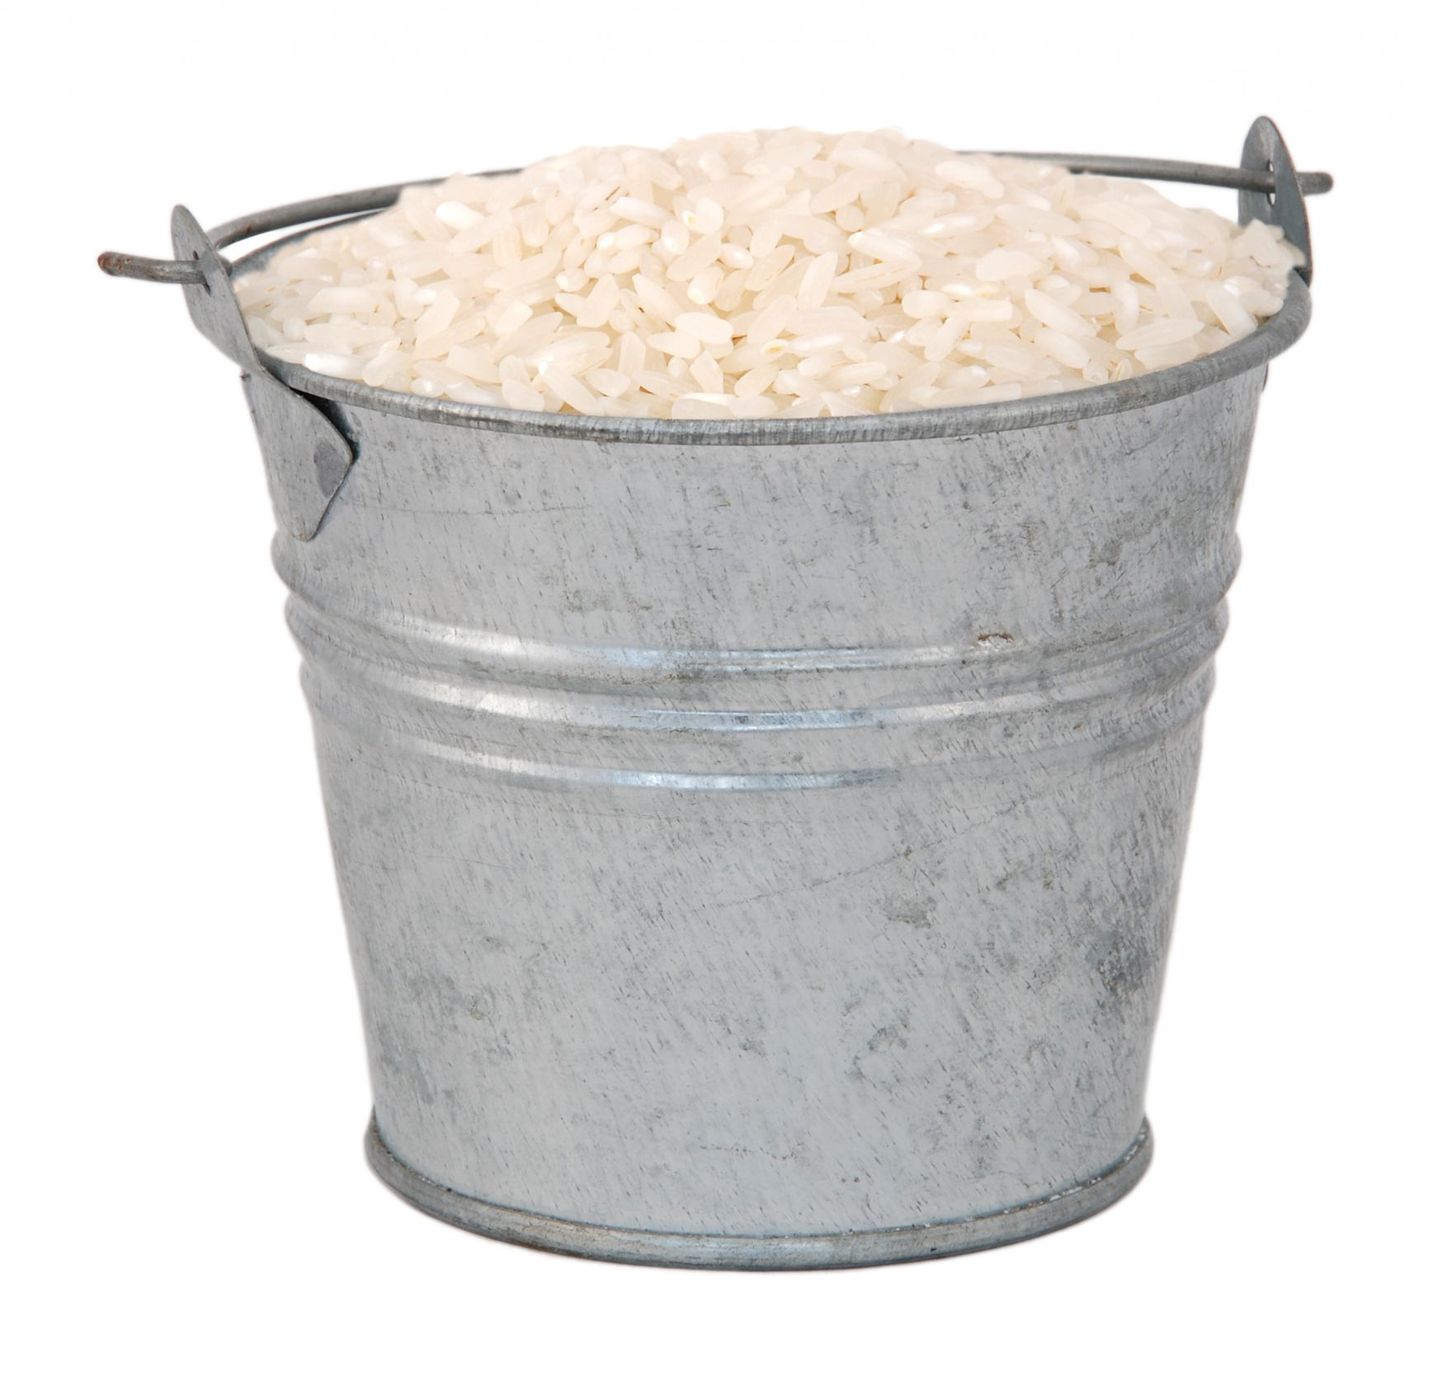 Jää-ämbri pähekallamise asemel kingitakse abivajatele riisi.